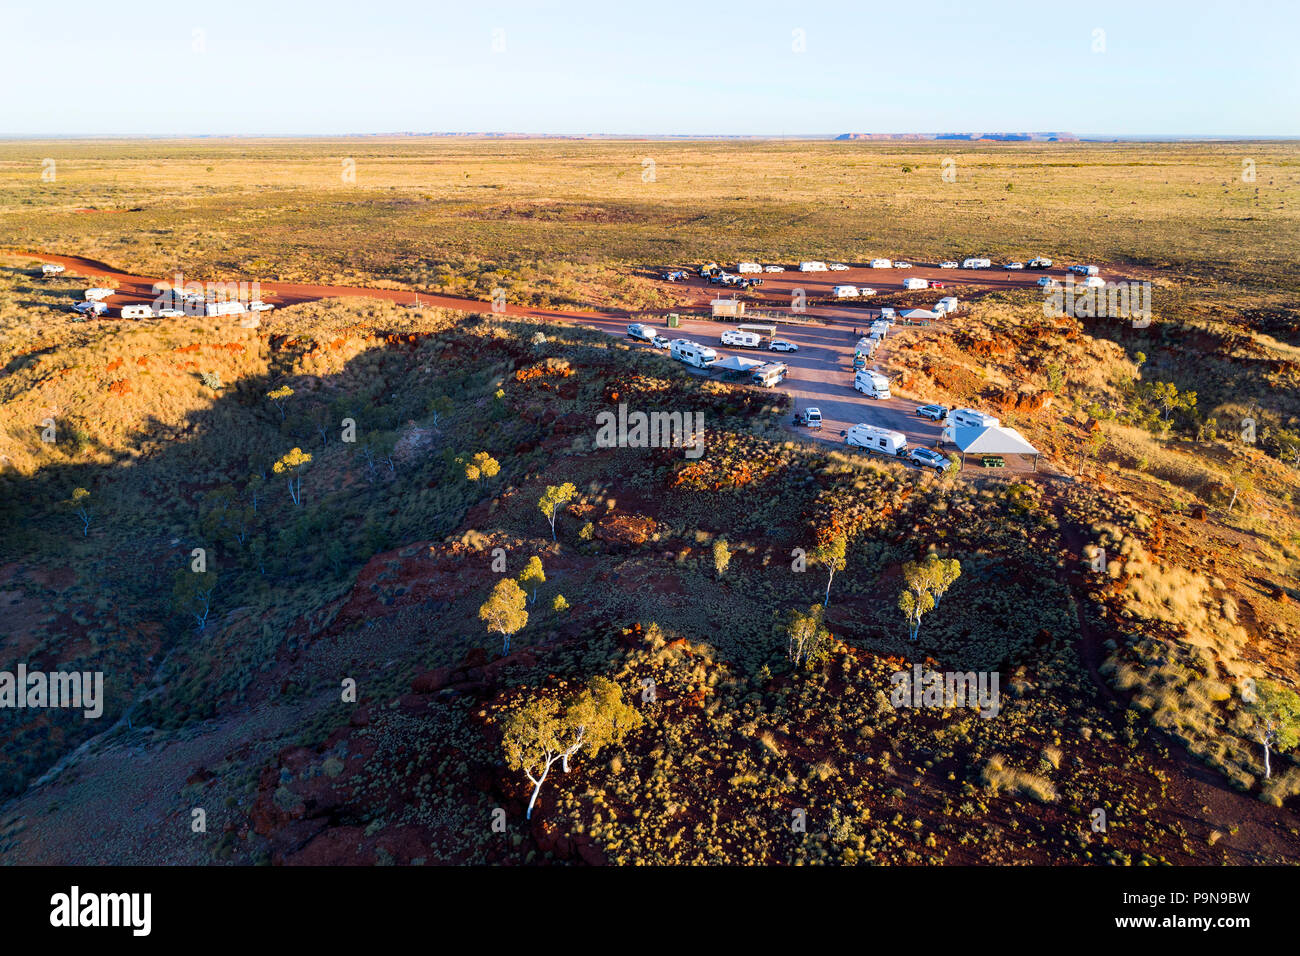 Luftaufnahme von Caravan camping Bereich im australischen Outback, Kimberley, Nordwesten Australien Stockfoto